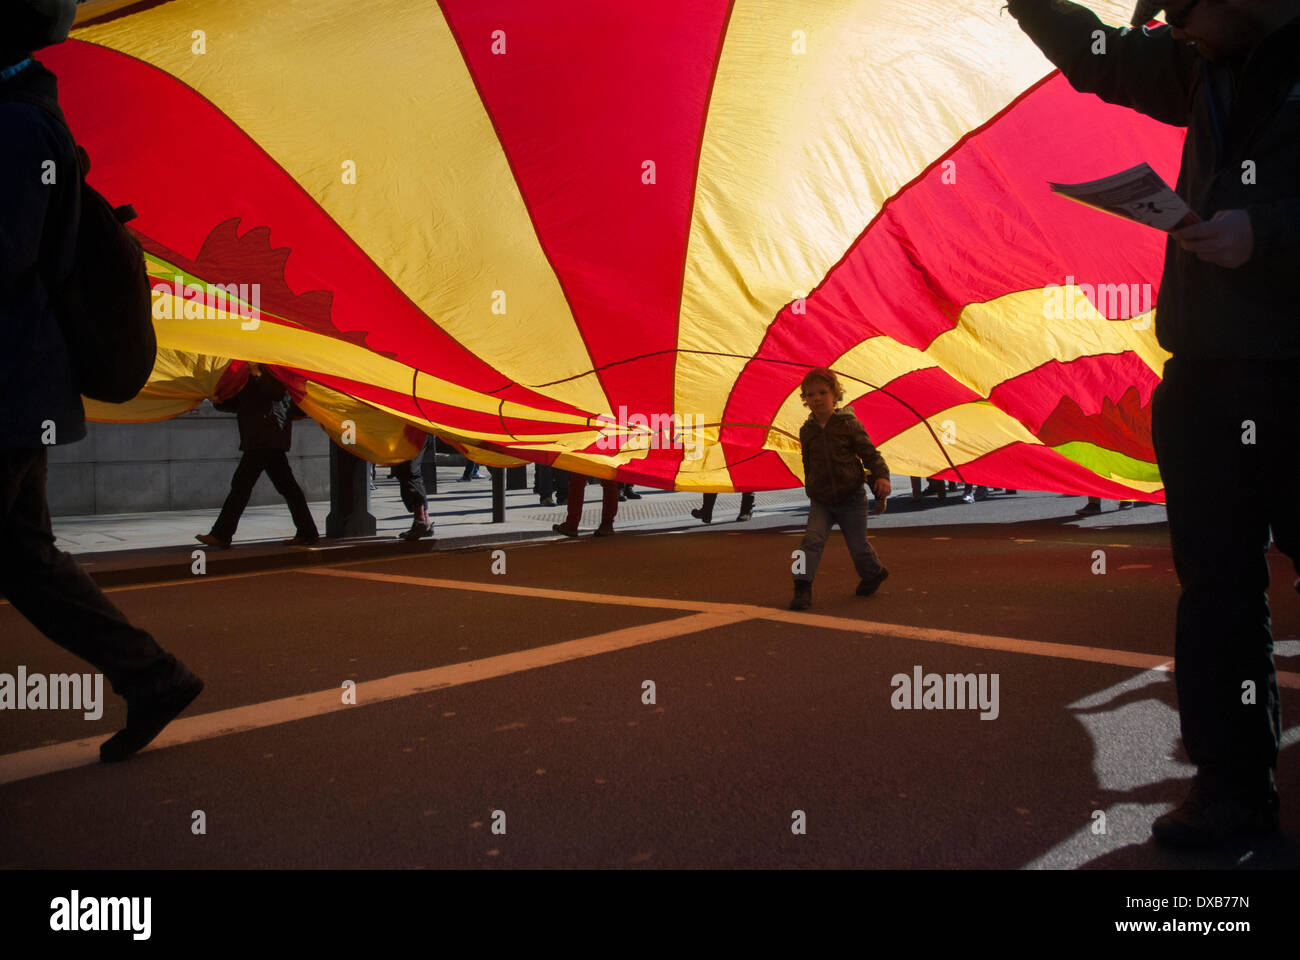 Londres, Royaume-Uni. 22 mars 2014. Un jeune garçon marche sous une grande banderole au cours de la Grand rassemblement dans le centre de Londres. Crédit : Peter Manning/Alamy Live News Banque D'Images